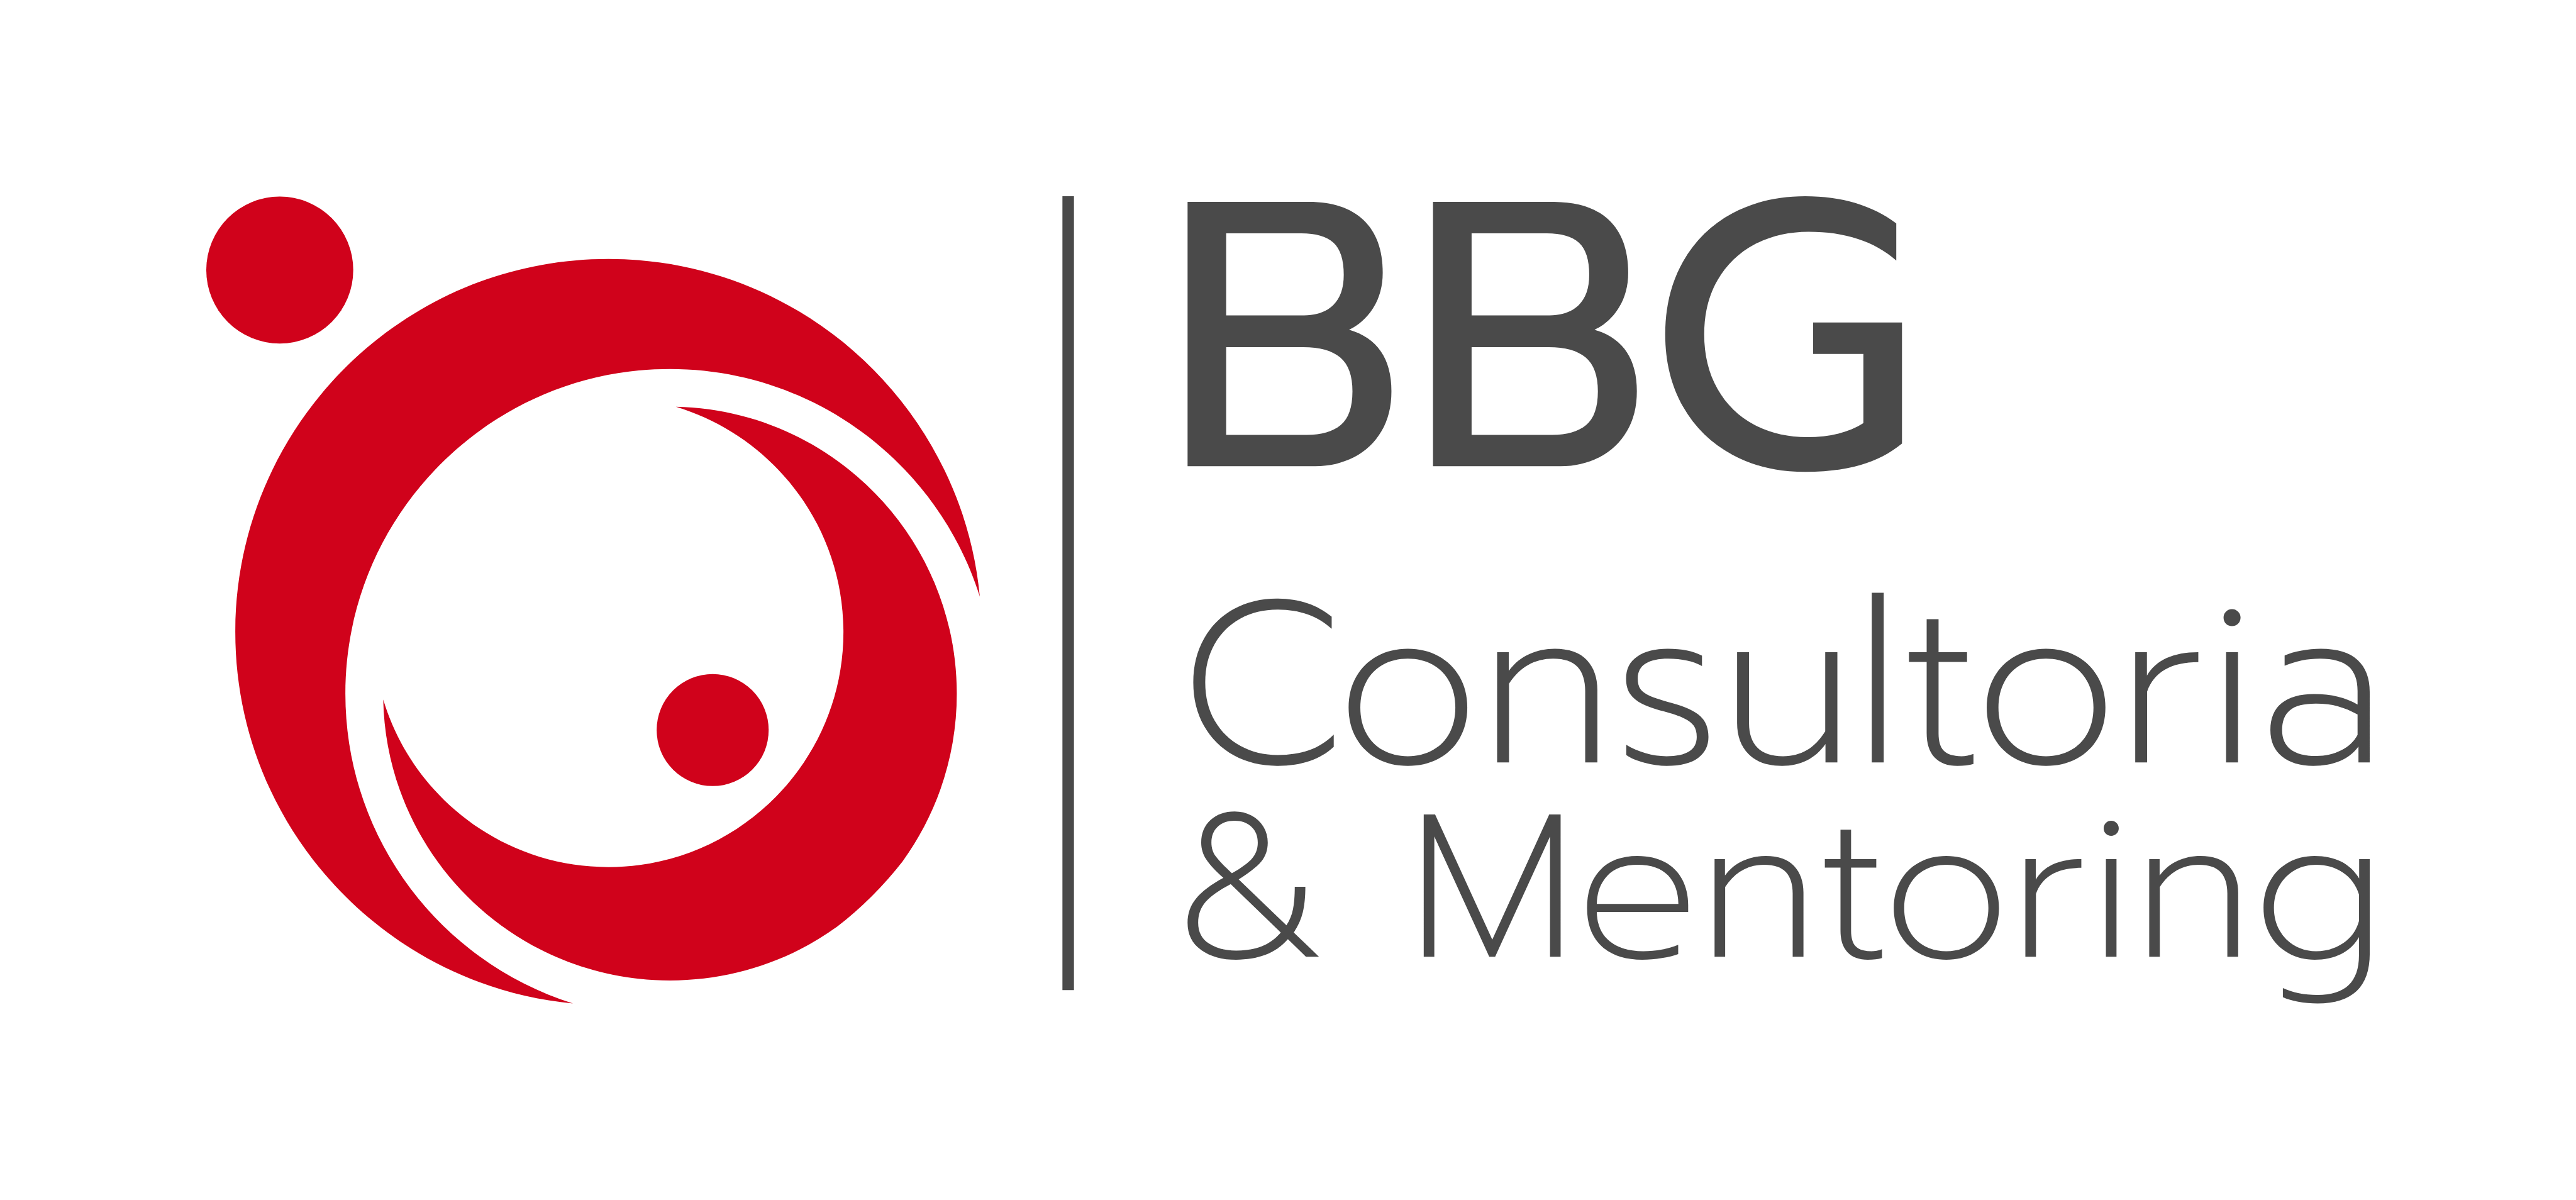 Blog | BBG Consultoria e Mentoring